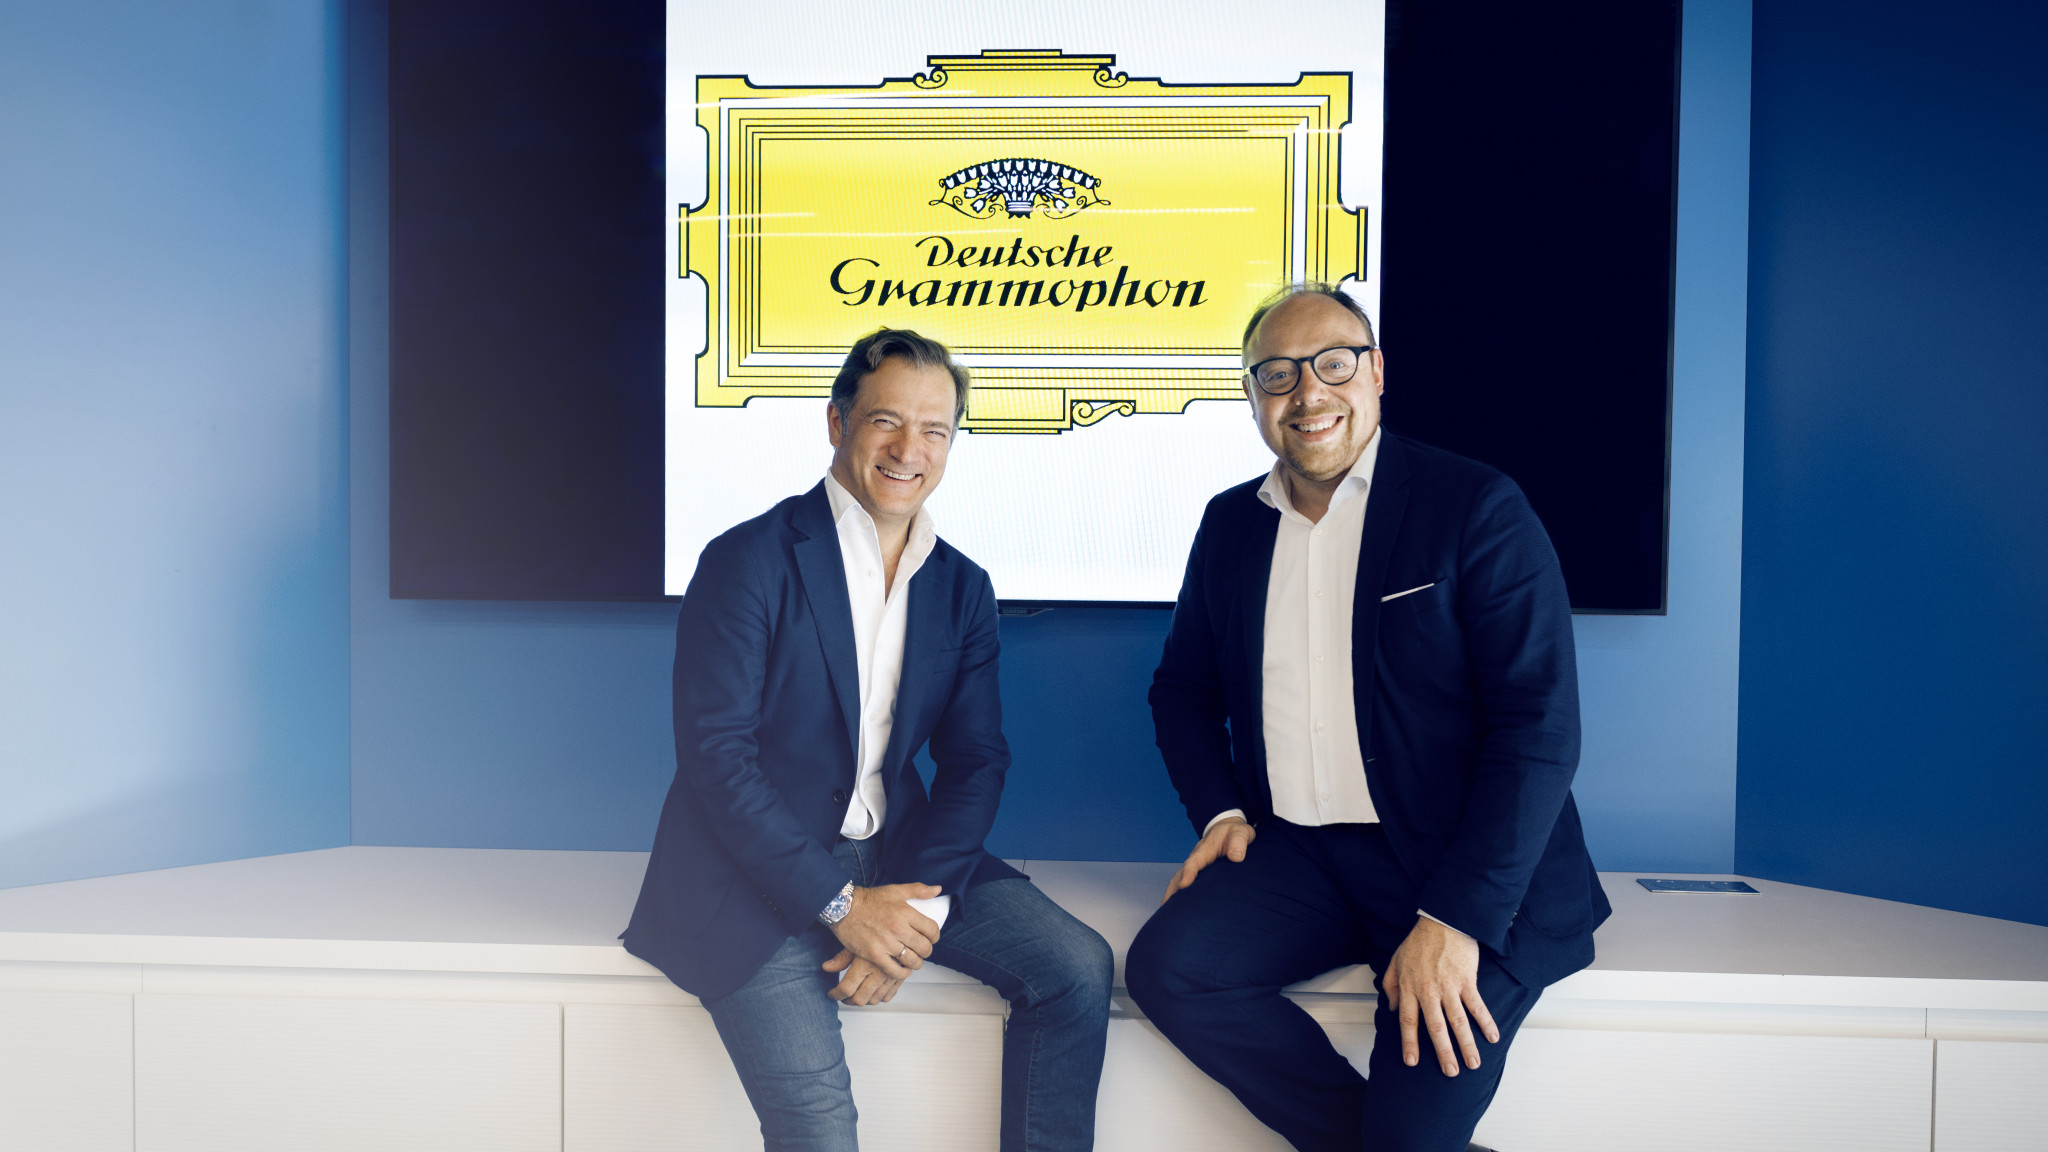 Renaud Capuçon und Deutsche Grammophon unterzeichnen innovative Partnerschaft